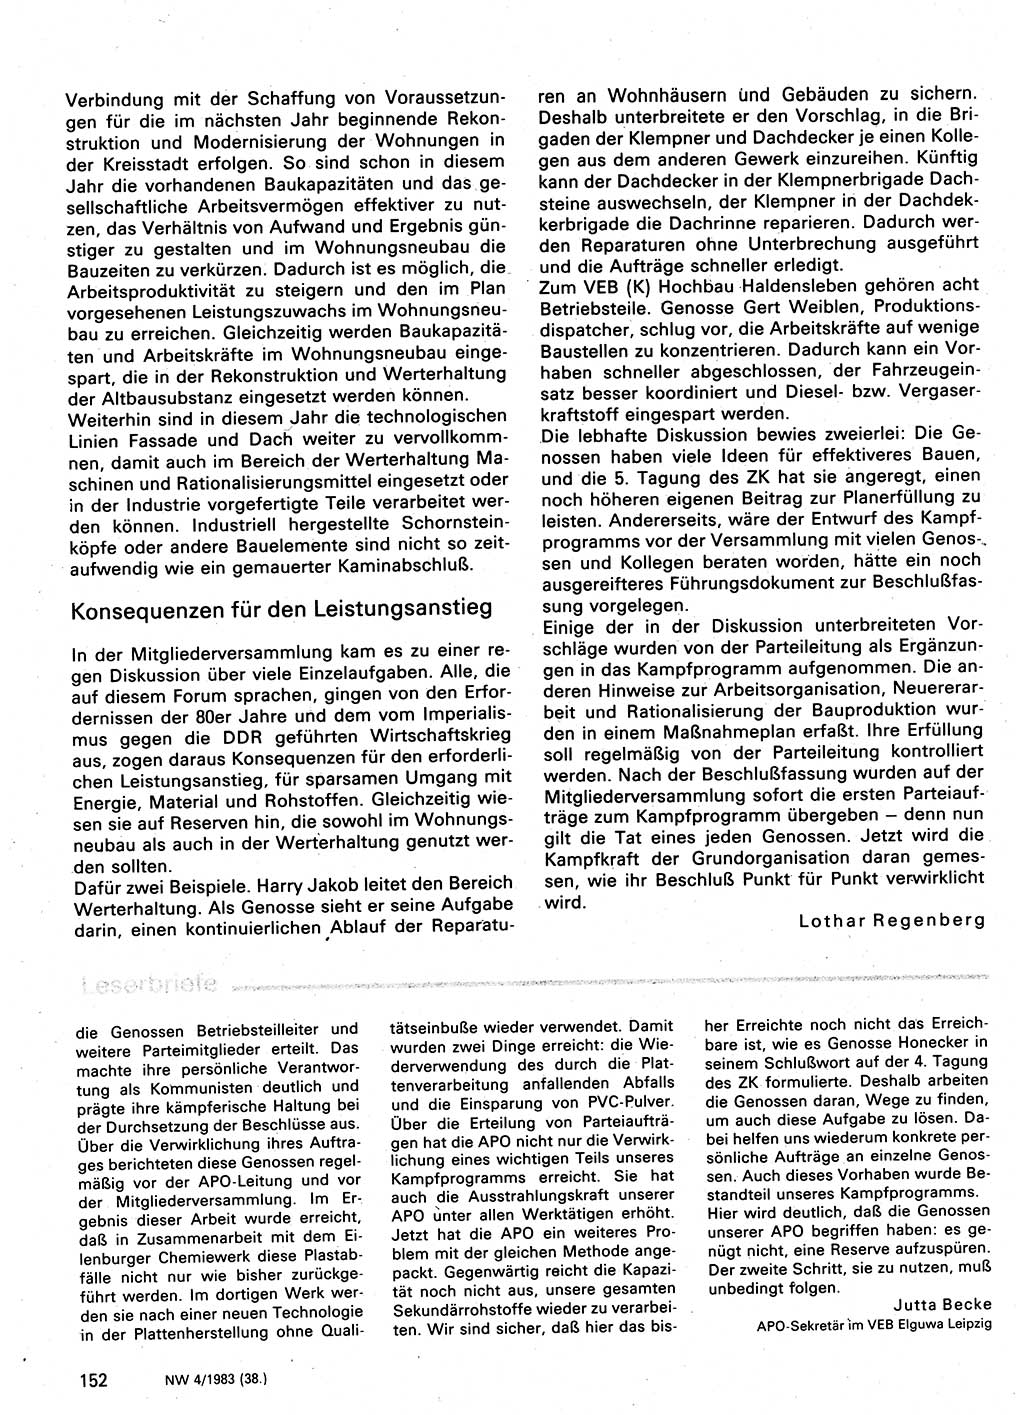 Neuer Weg (NW), Organ des Zentralkomitees (ZK) der SED (Sozialistische Einheitspartei Deutschlands) für Fragen des Parteilebens, 38. Jahrgang [Deutsche Demokratische Republik (DDR)] 1983, Seite 152 (NW ZK SED DDR 1983, S. 152)